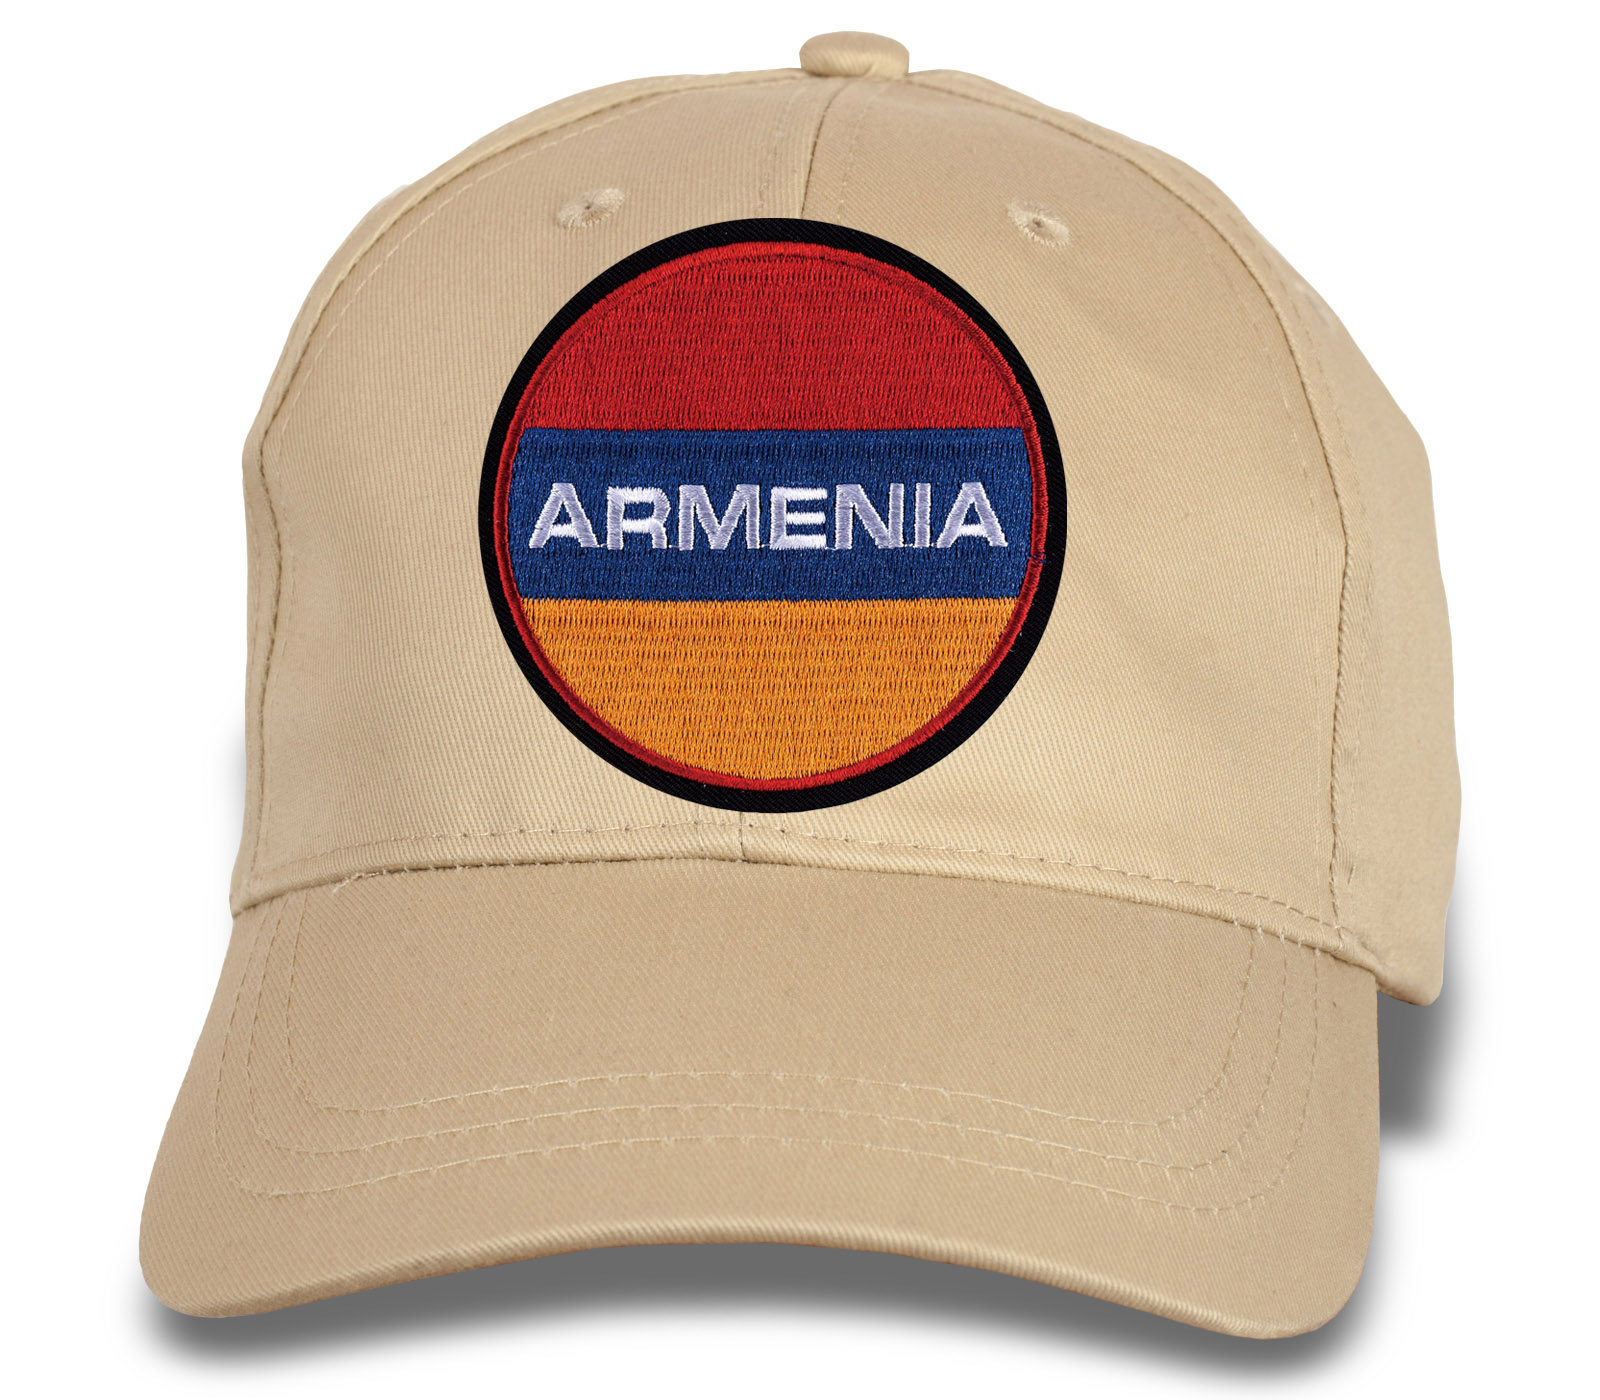 Купить бейсболку с вышивкой "ARMENIA"